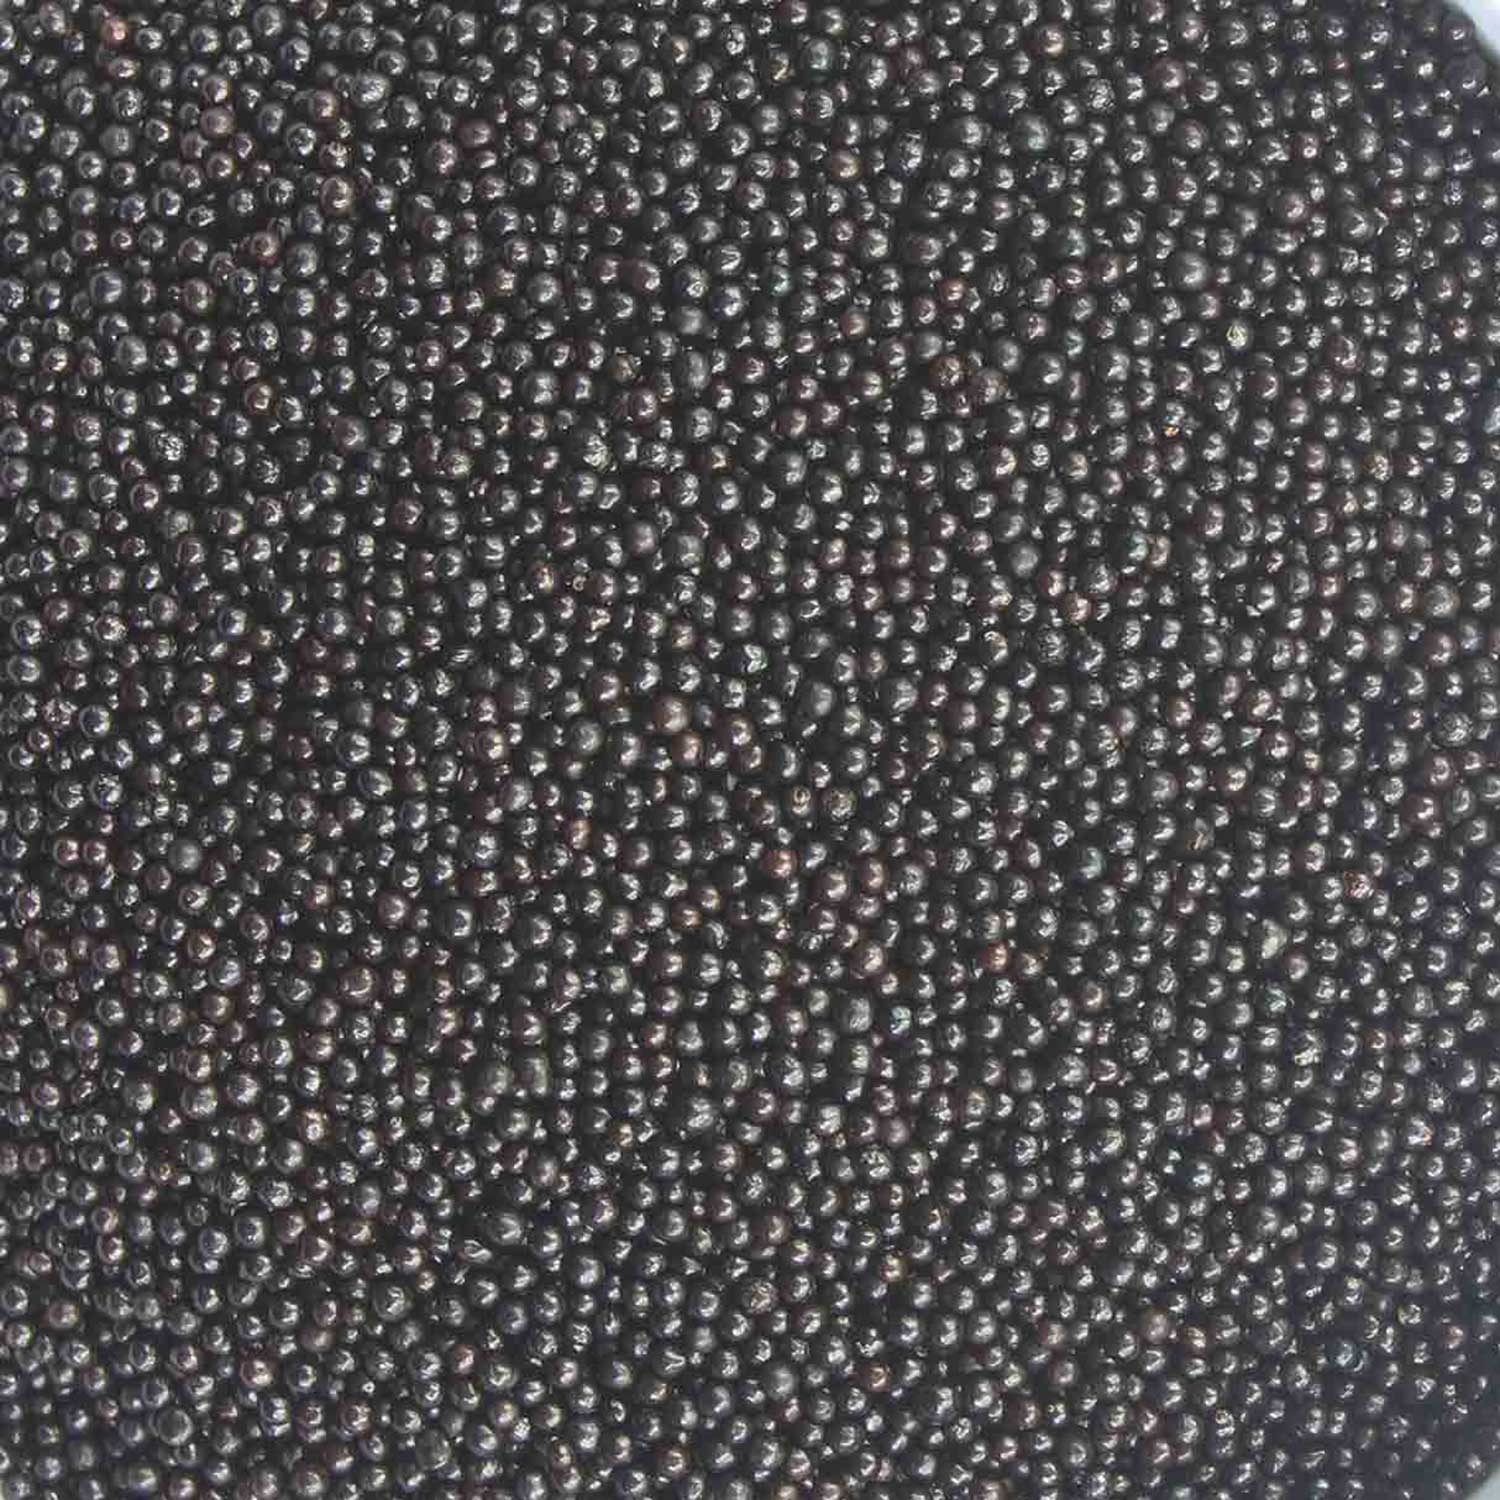 Black Nonpareils Beads